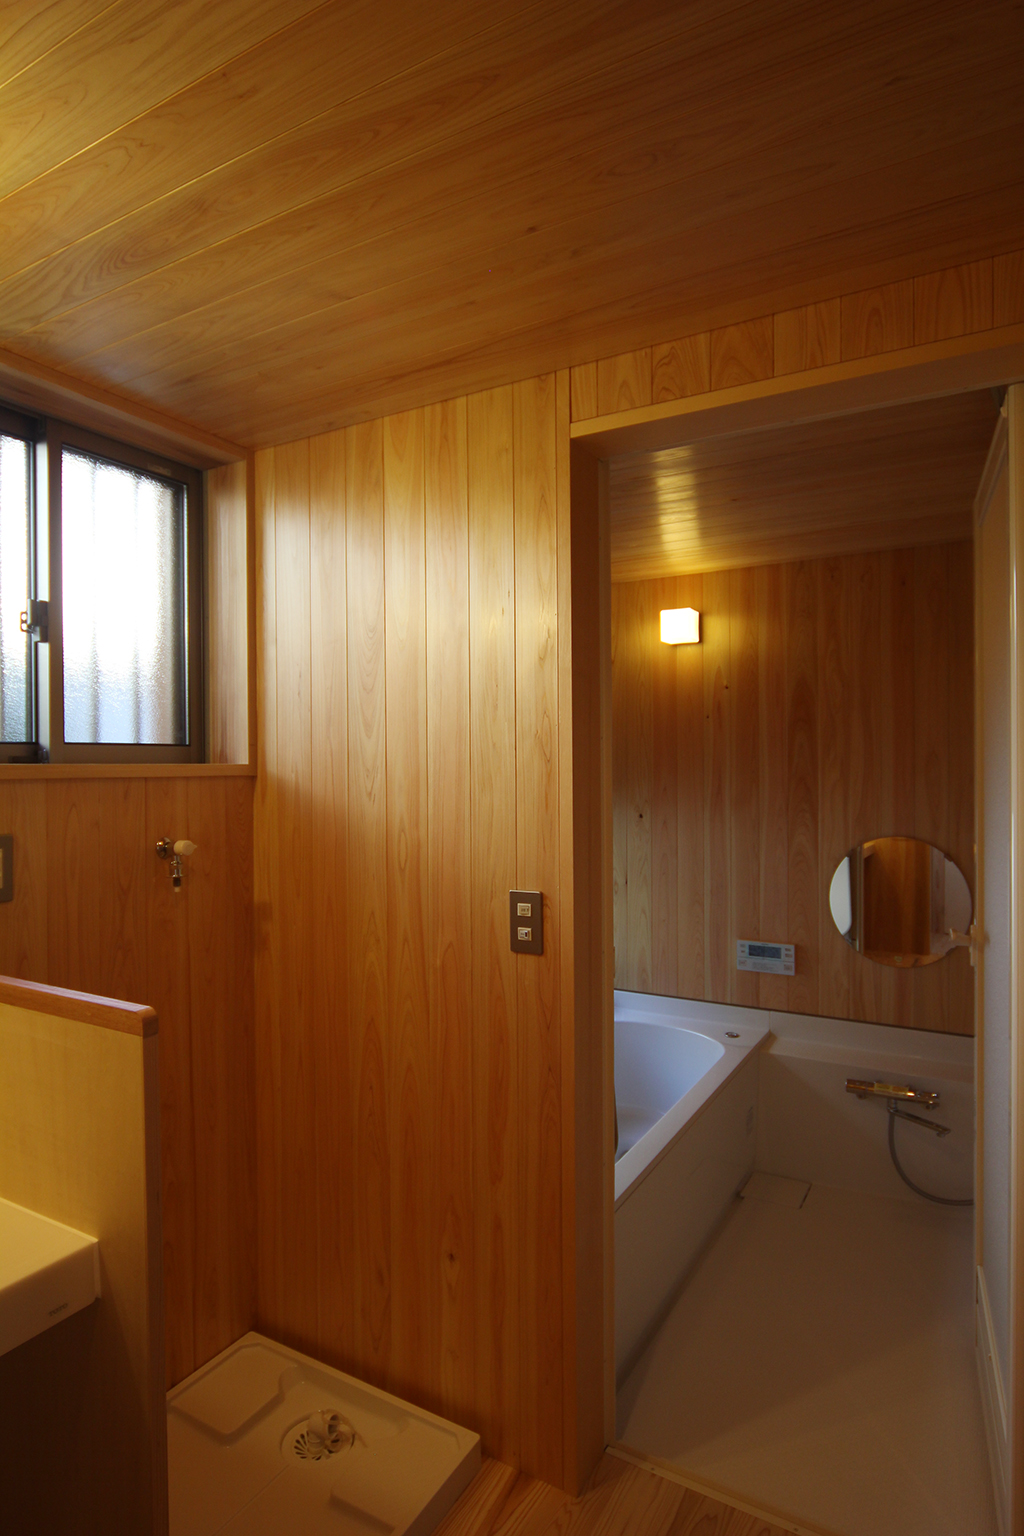 神戸市の木の家 旅館のような浴室